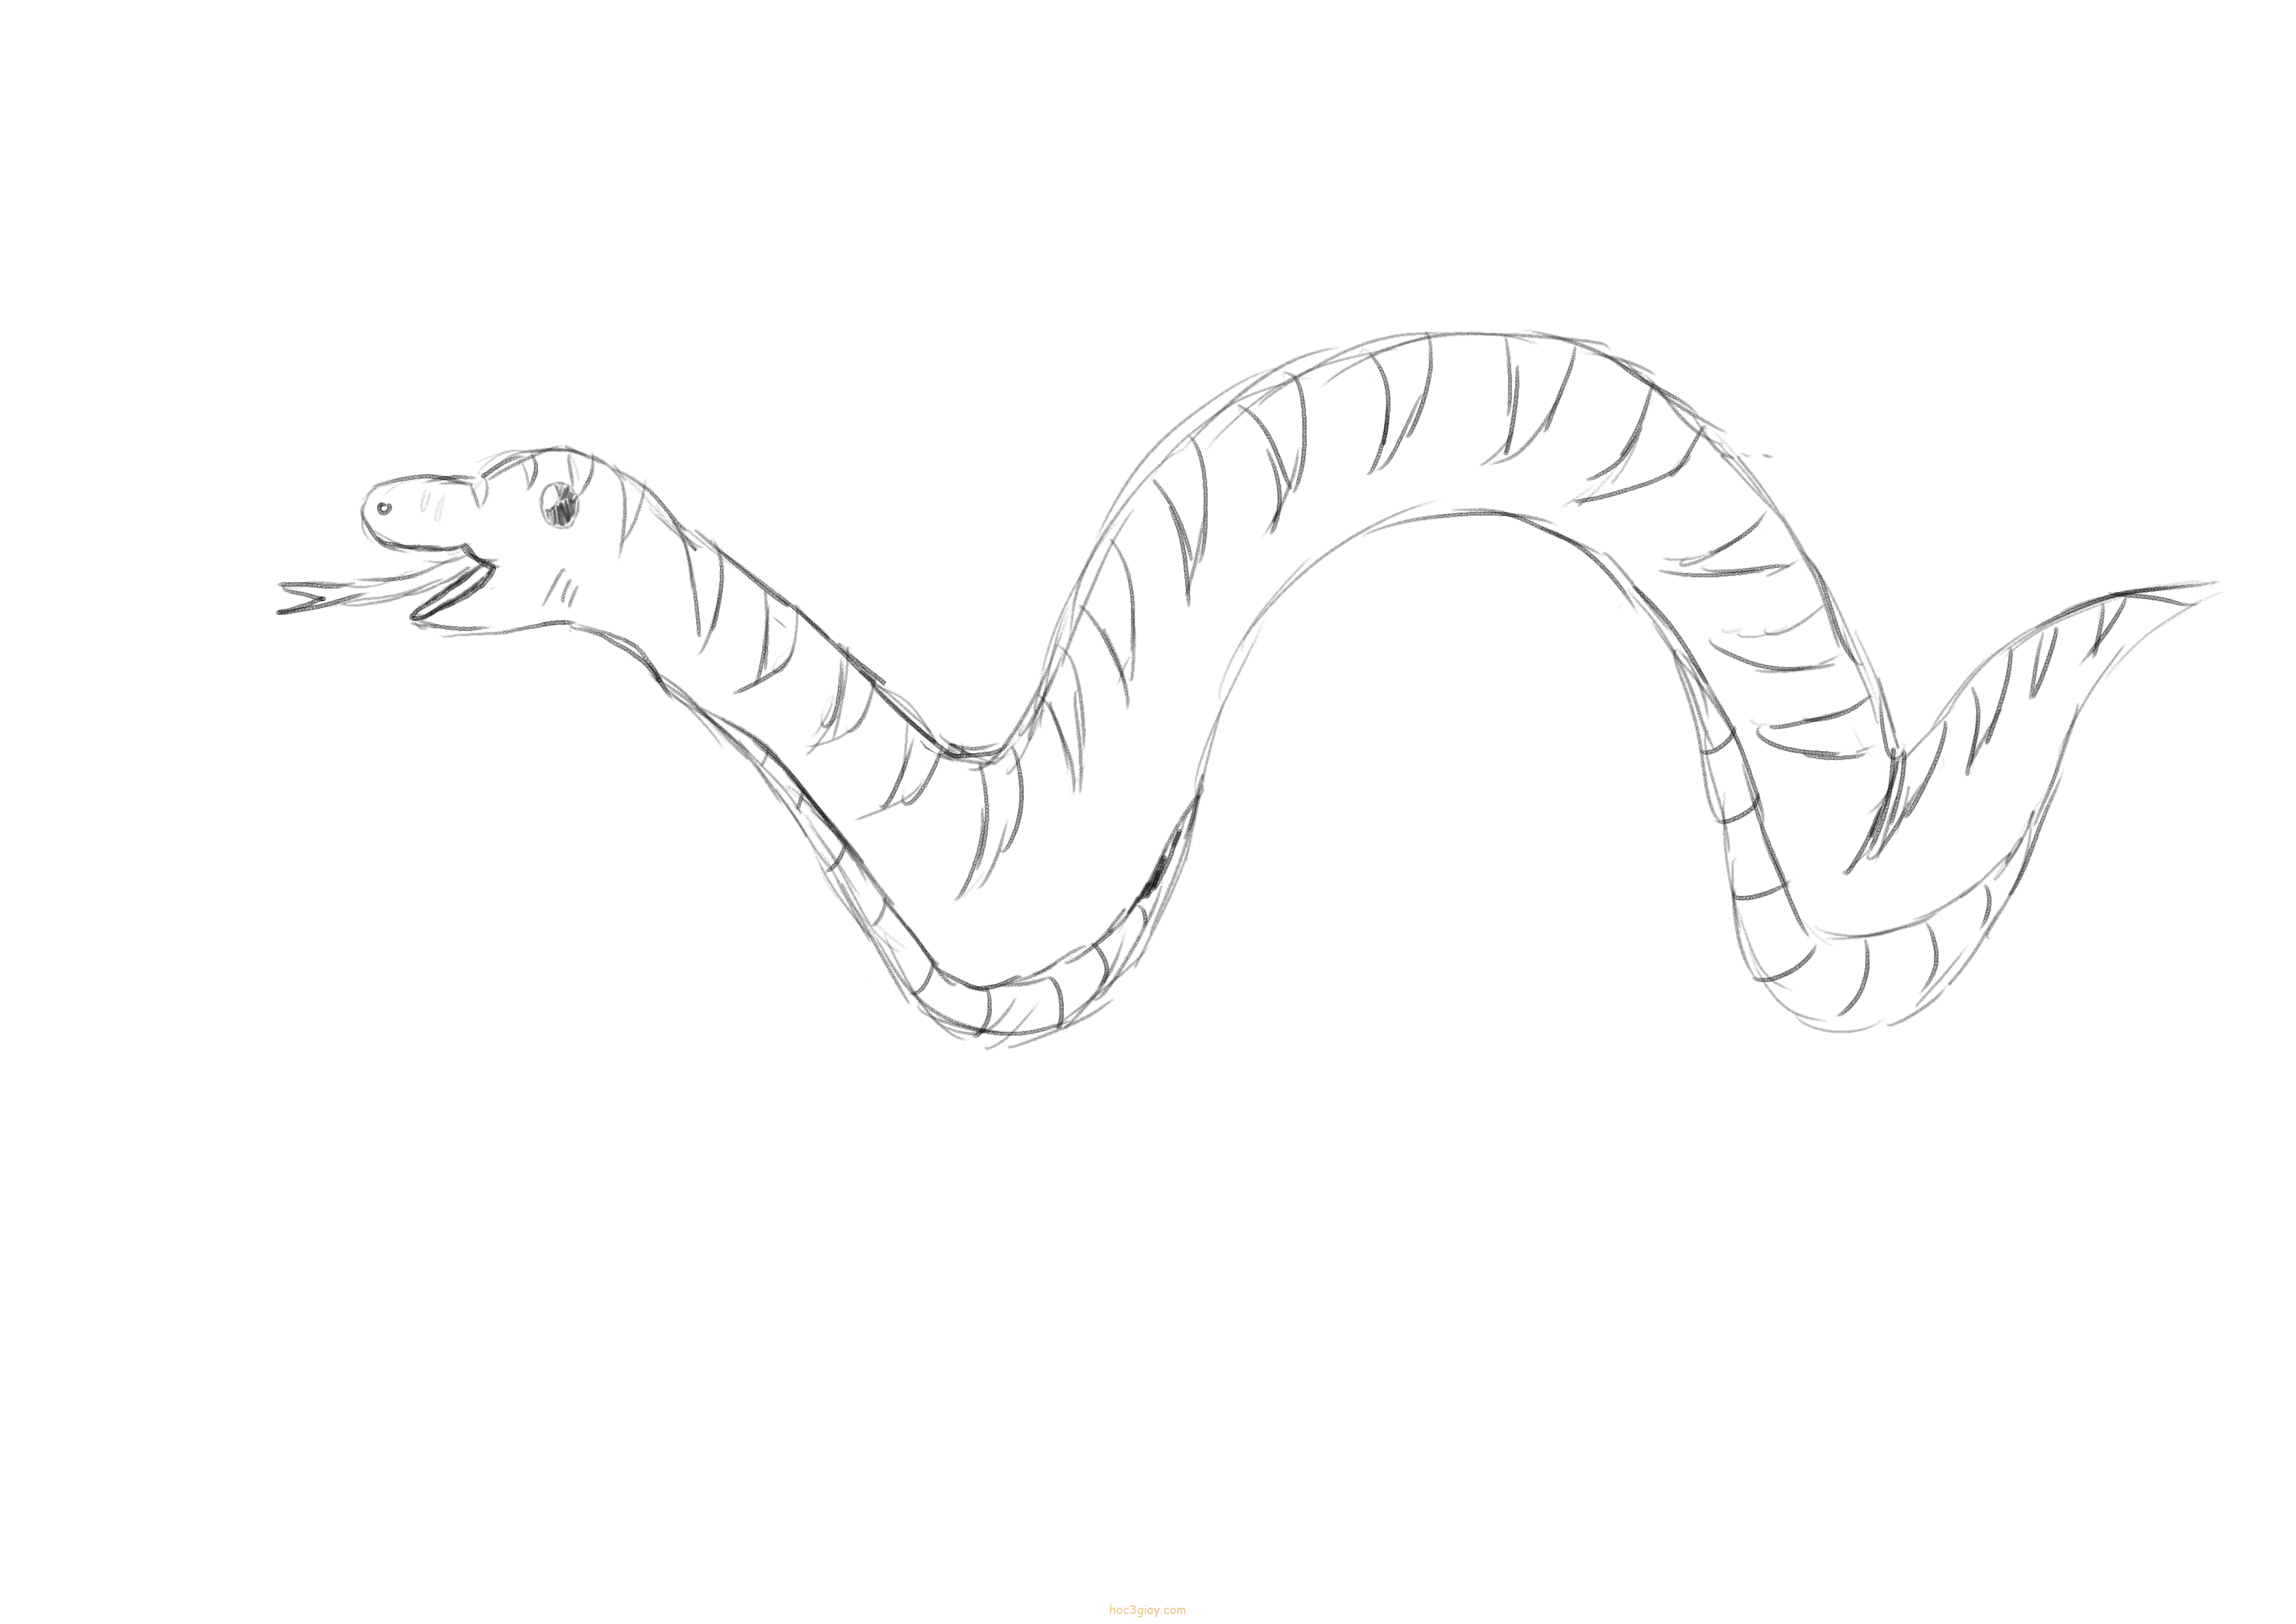 Bạn muốn học vẽ rắn đẹp một cách nhanh chóng? Chỉ với 3 giây học vẽ, bạn sẽ tìm thấy cách để tạo ra những bức tranh rắn đẹp mắt một cách dễ dàng. Hãy xem ảnh và khám phá những thủ thuật kỹ thuật chuyên nghiệp để trở thành một họa sĩ vô cùng tài năng.